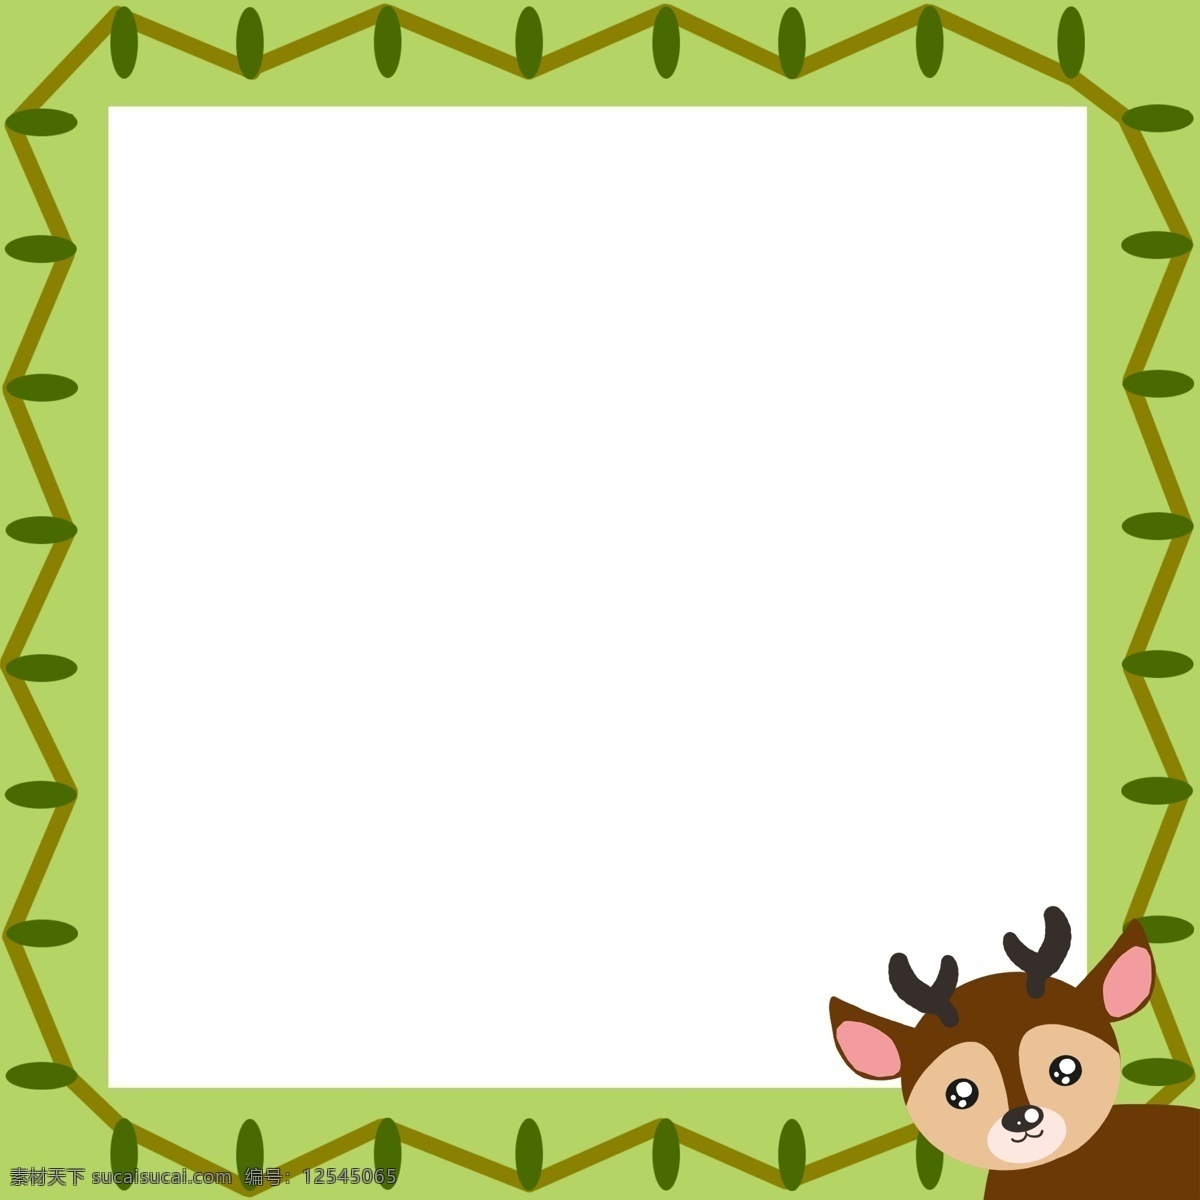 手绘 圣诞节 麋鹿 边框 手绘动物边框 手绘底纹 方形边框 边框手绘插画 圣诞节边框 鹿角边框 麋鹿边框